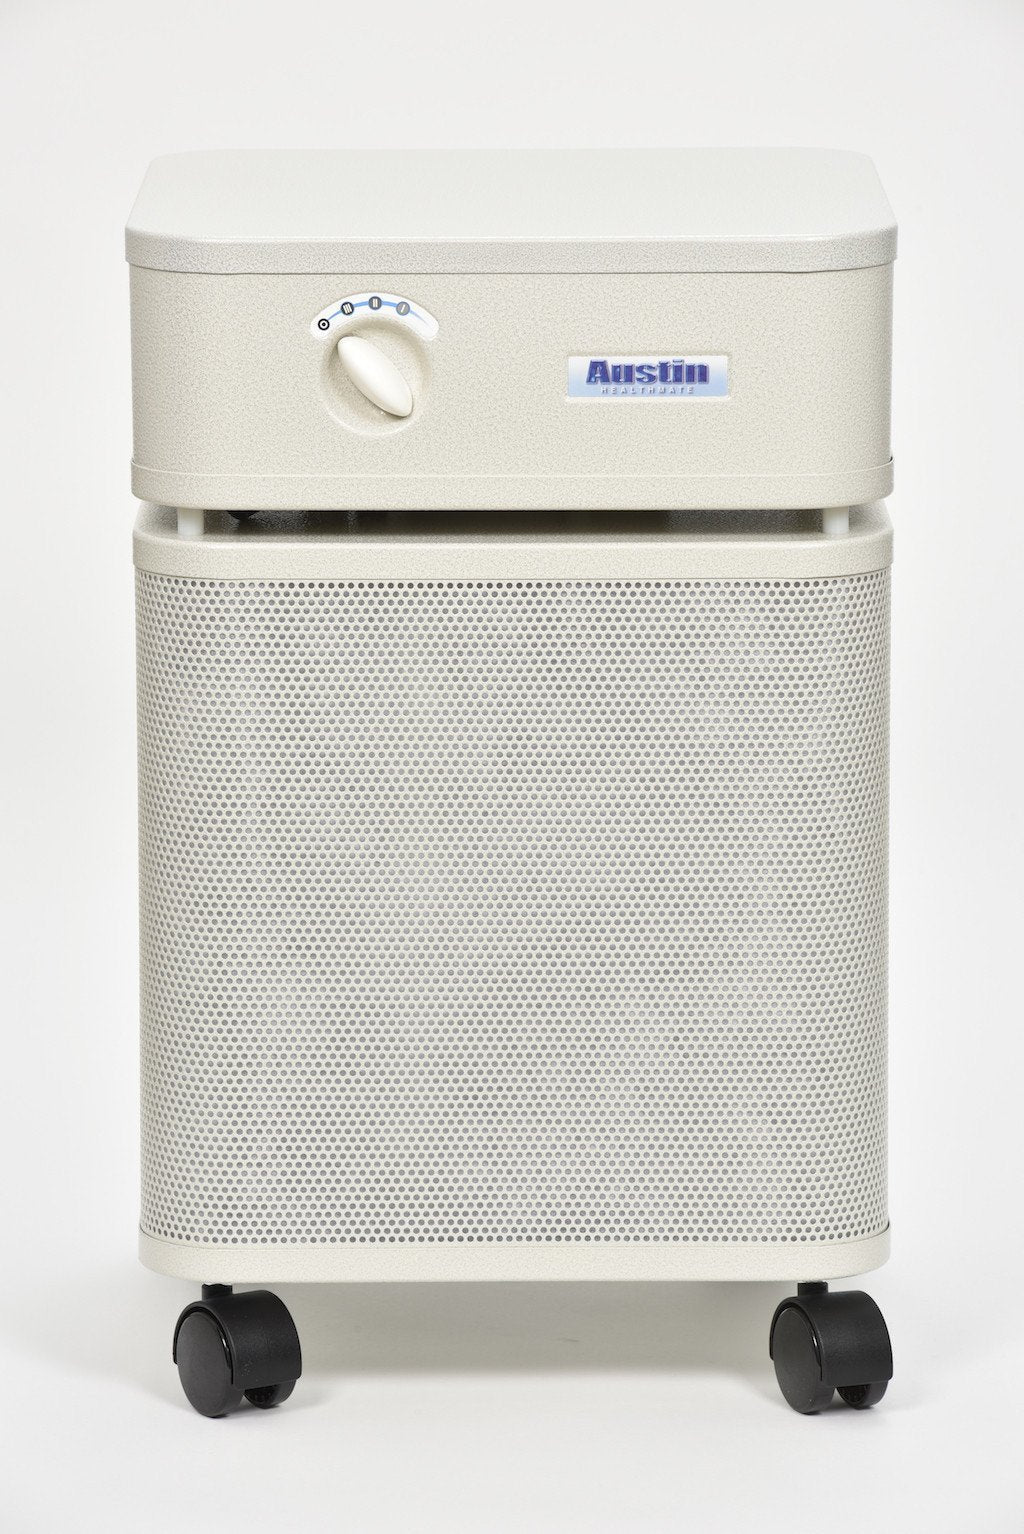 HealthMate HM400 Standard Air Purifier